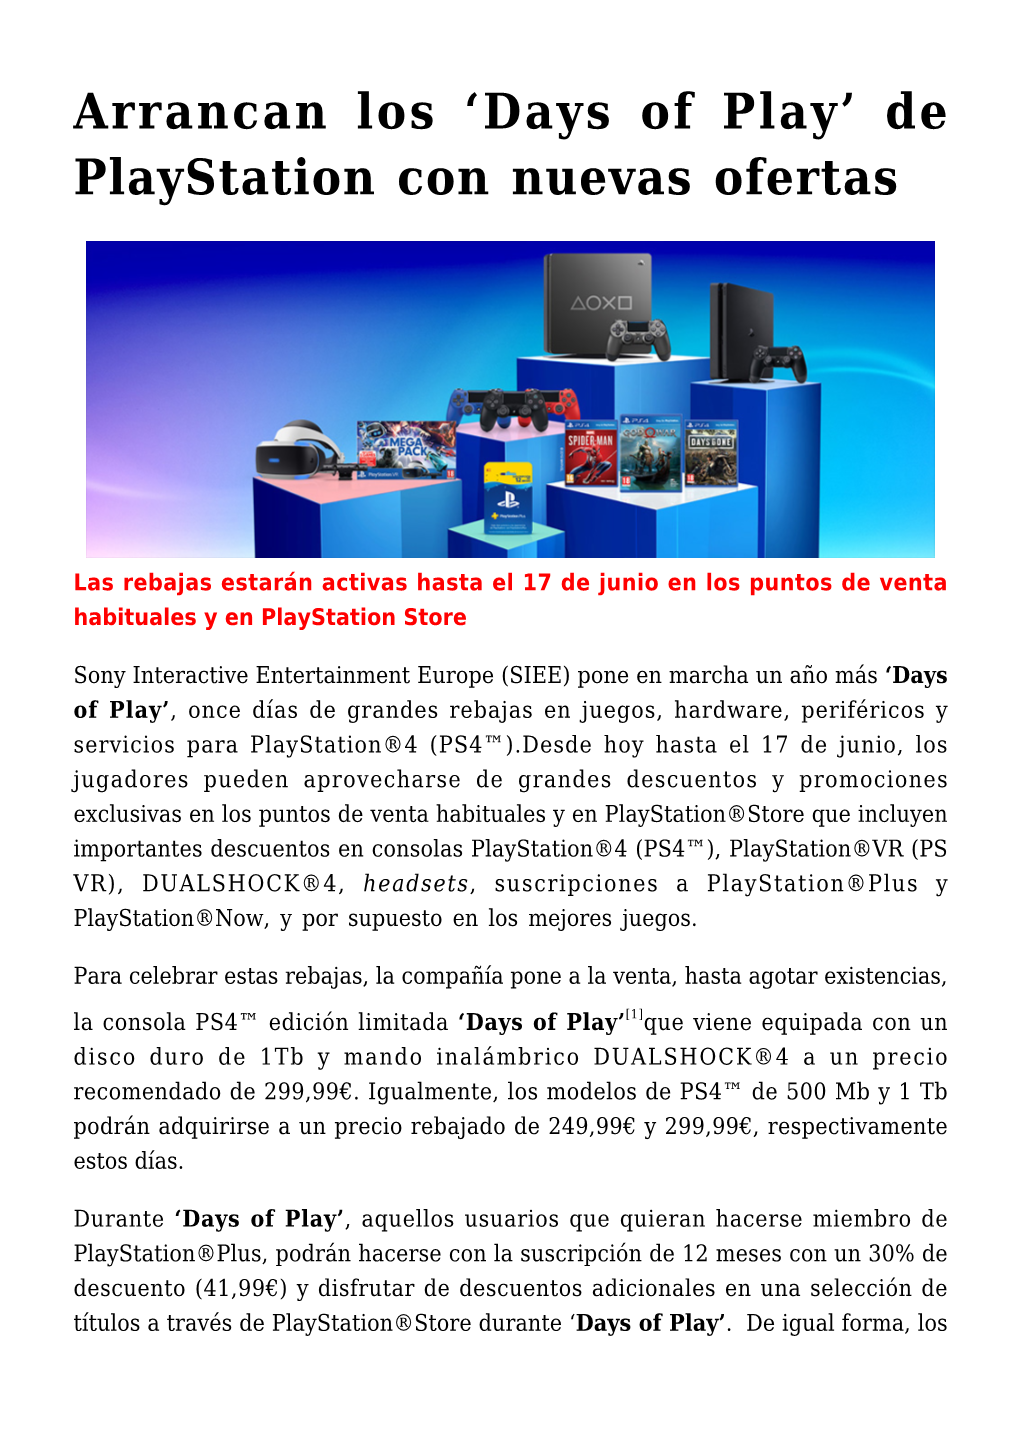 Arrancan Los 'Days of Play' De Playstation Con Nuevas Ofertas